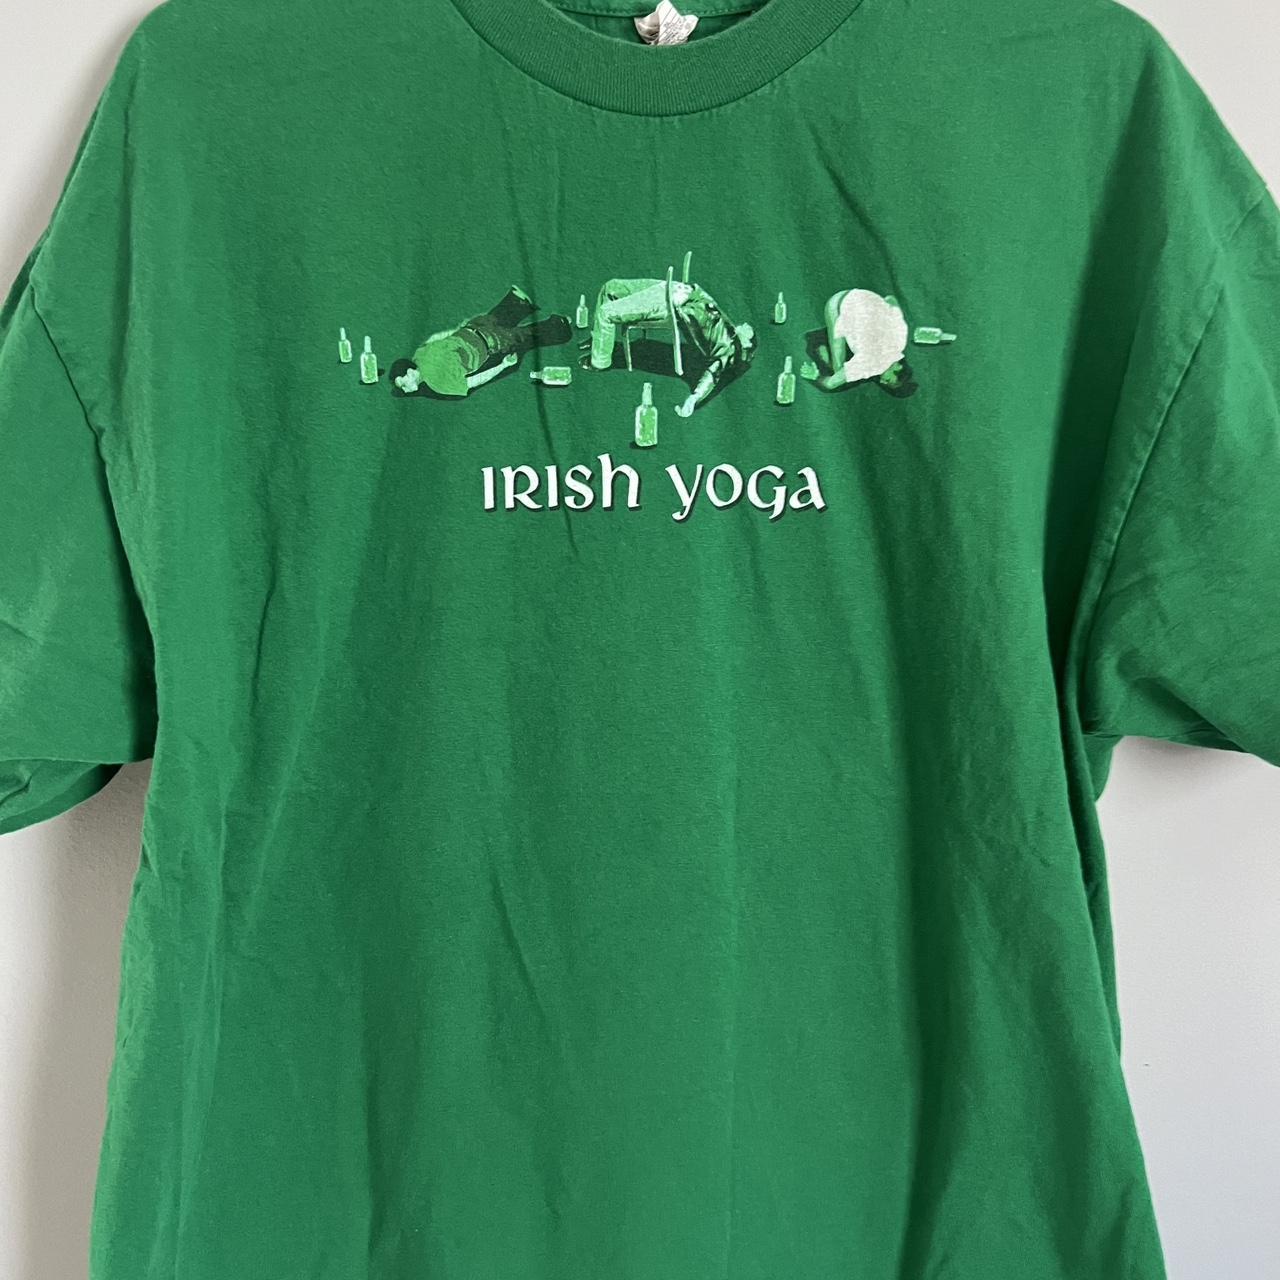 XL Irish yoga - Depop